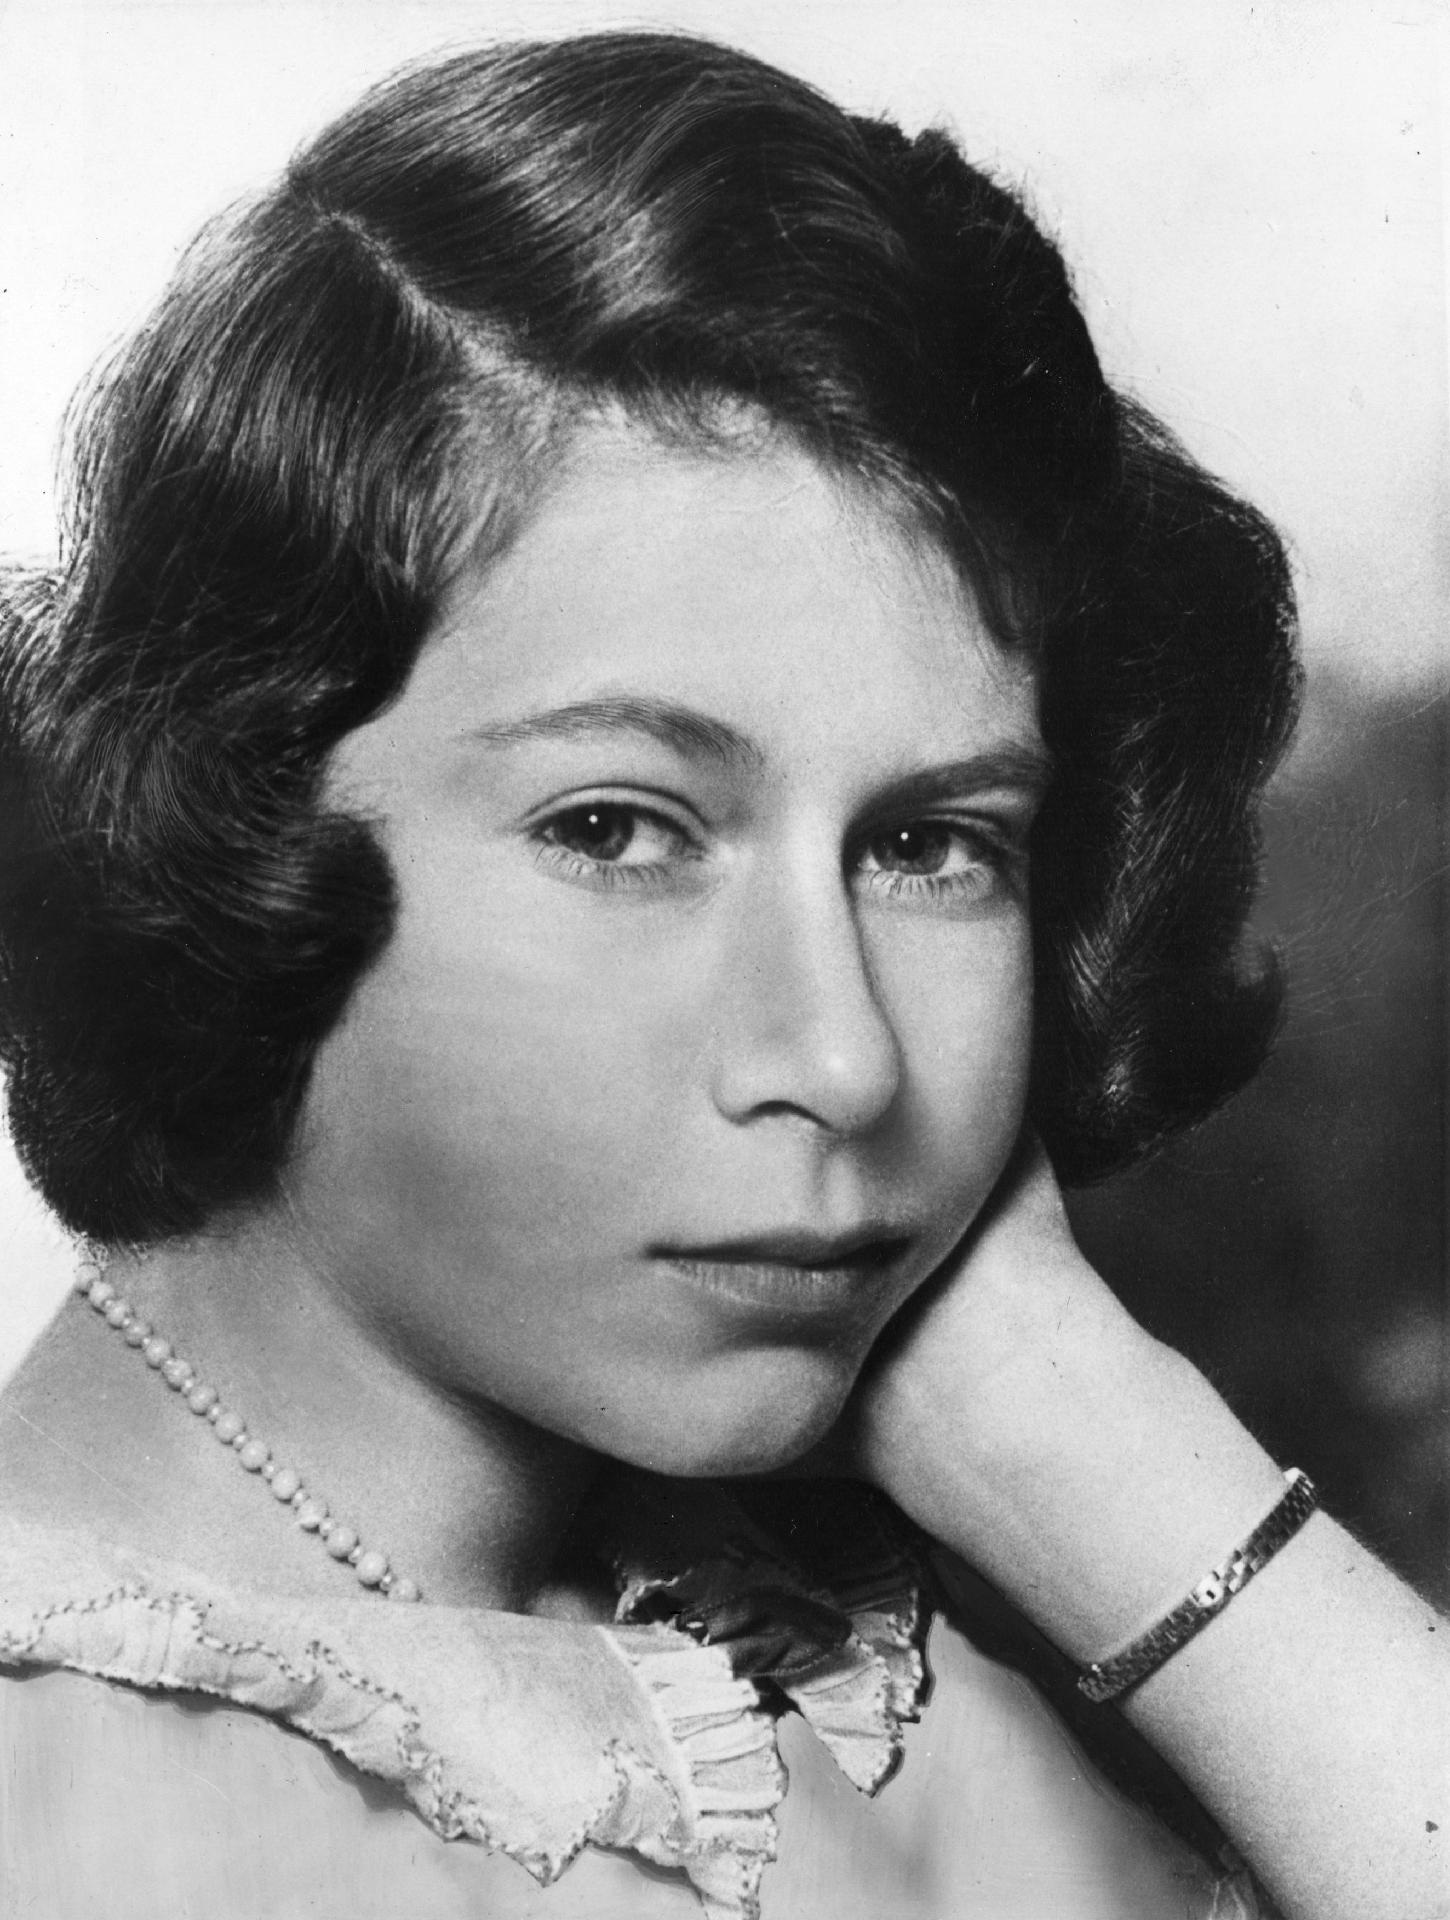 Portrait of Queen Elizabeth II in 1940 - Getty Images